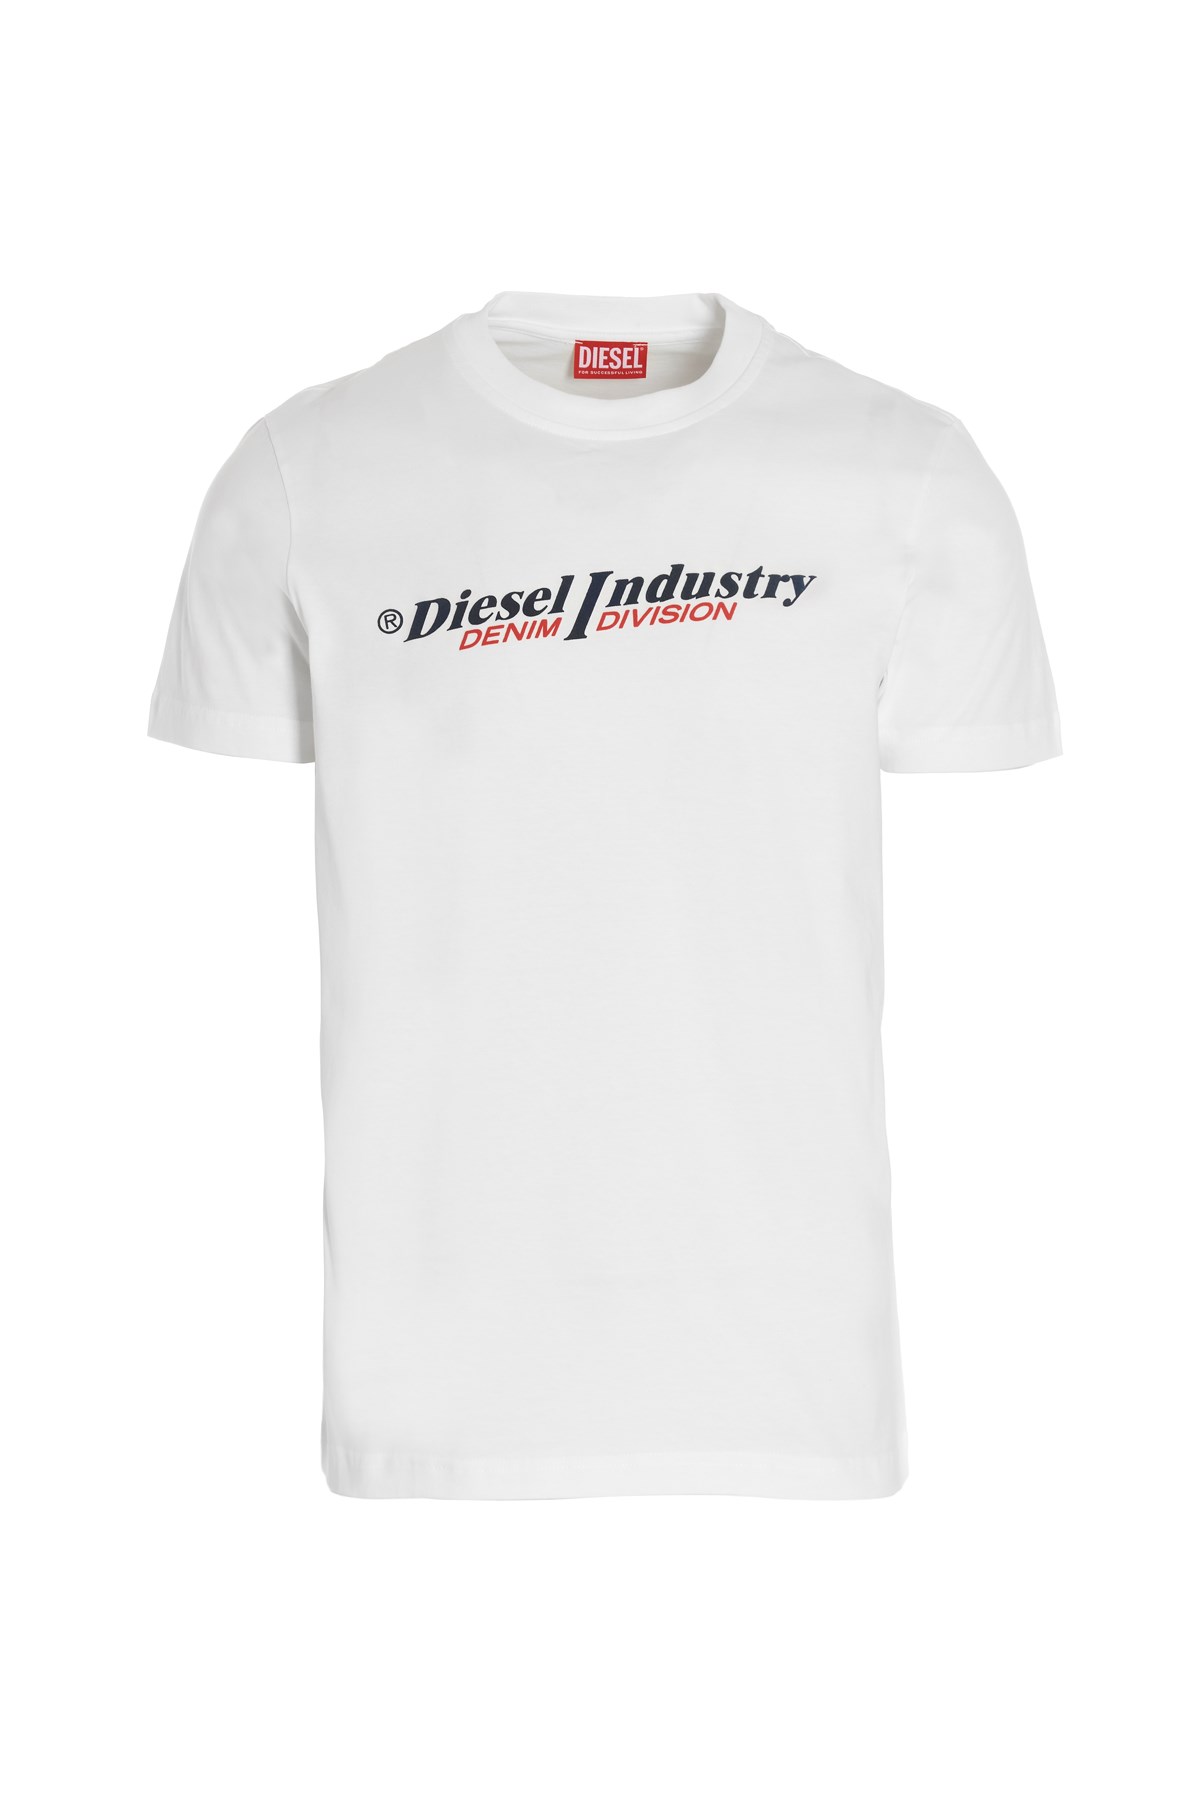 DIESEL T-Shirt Mit Logo-Druck